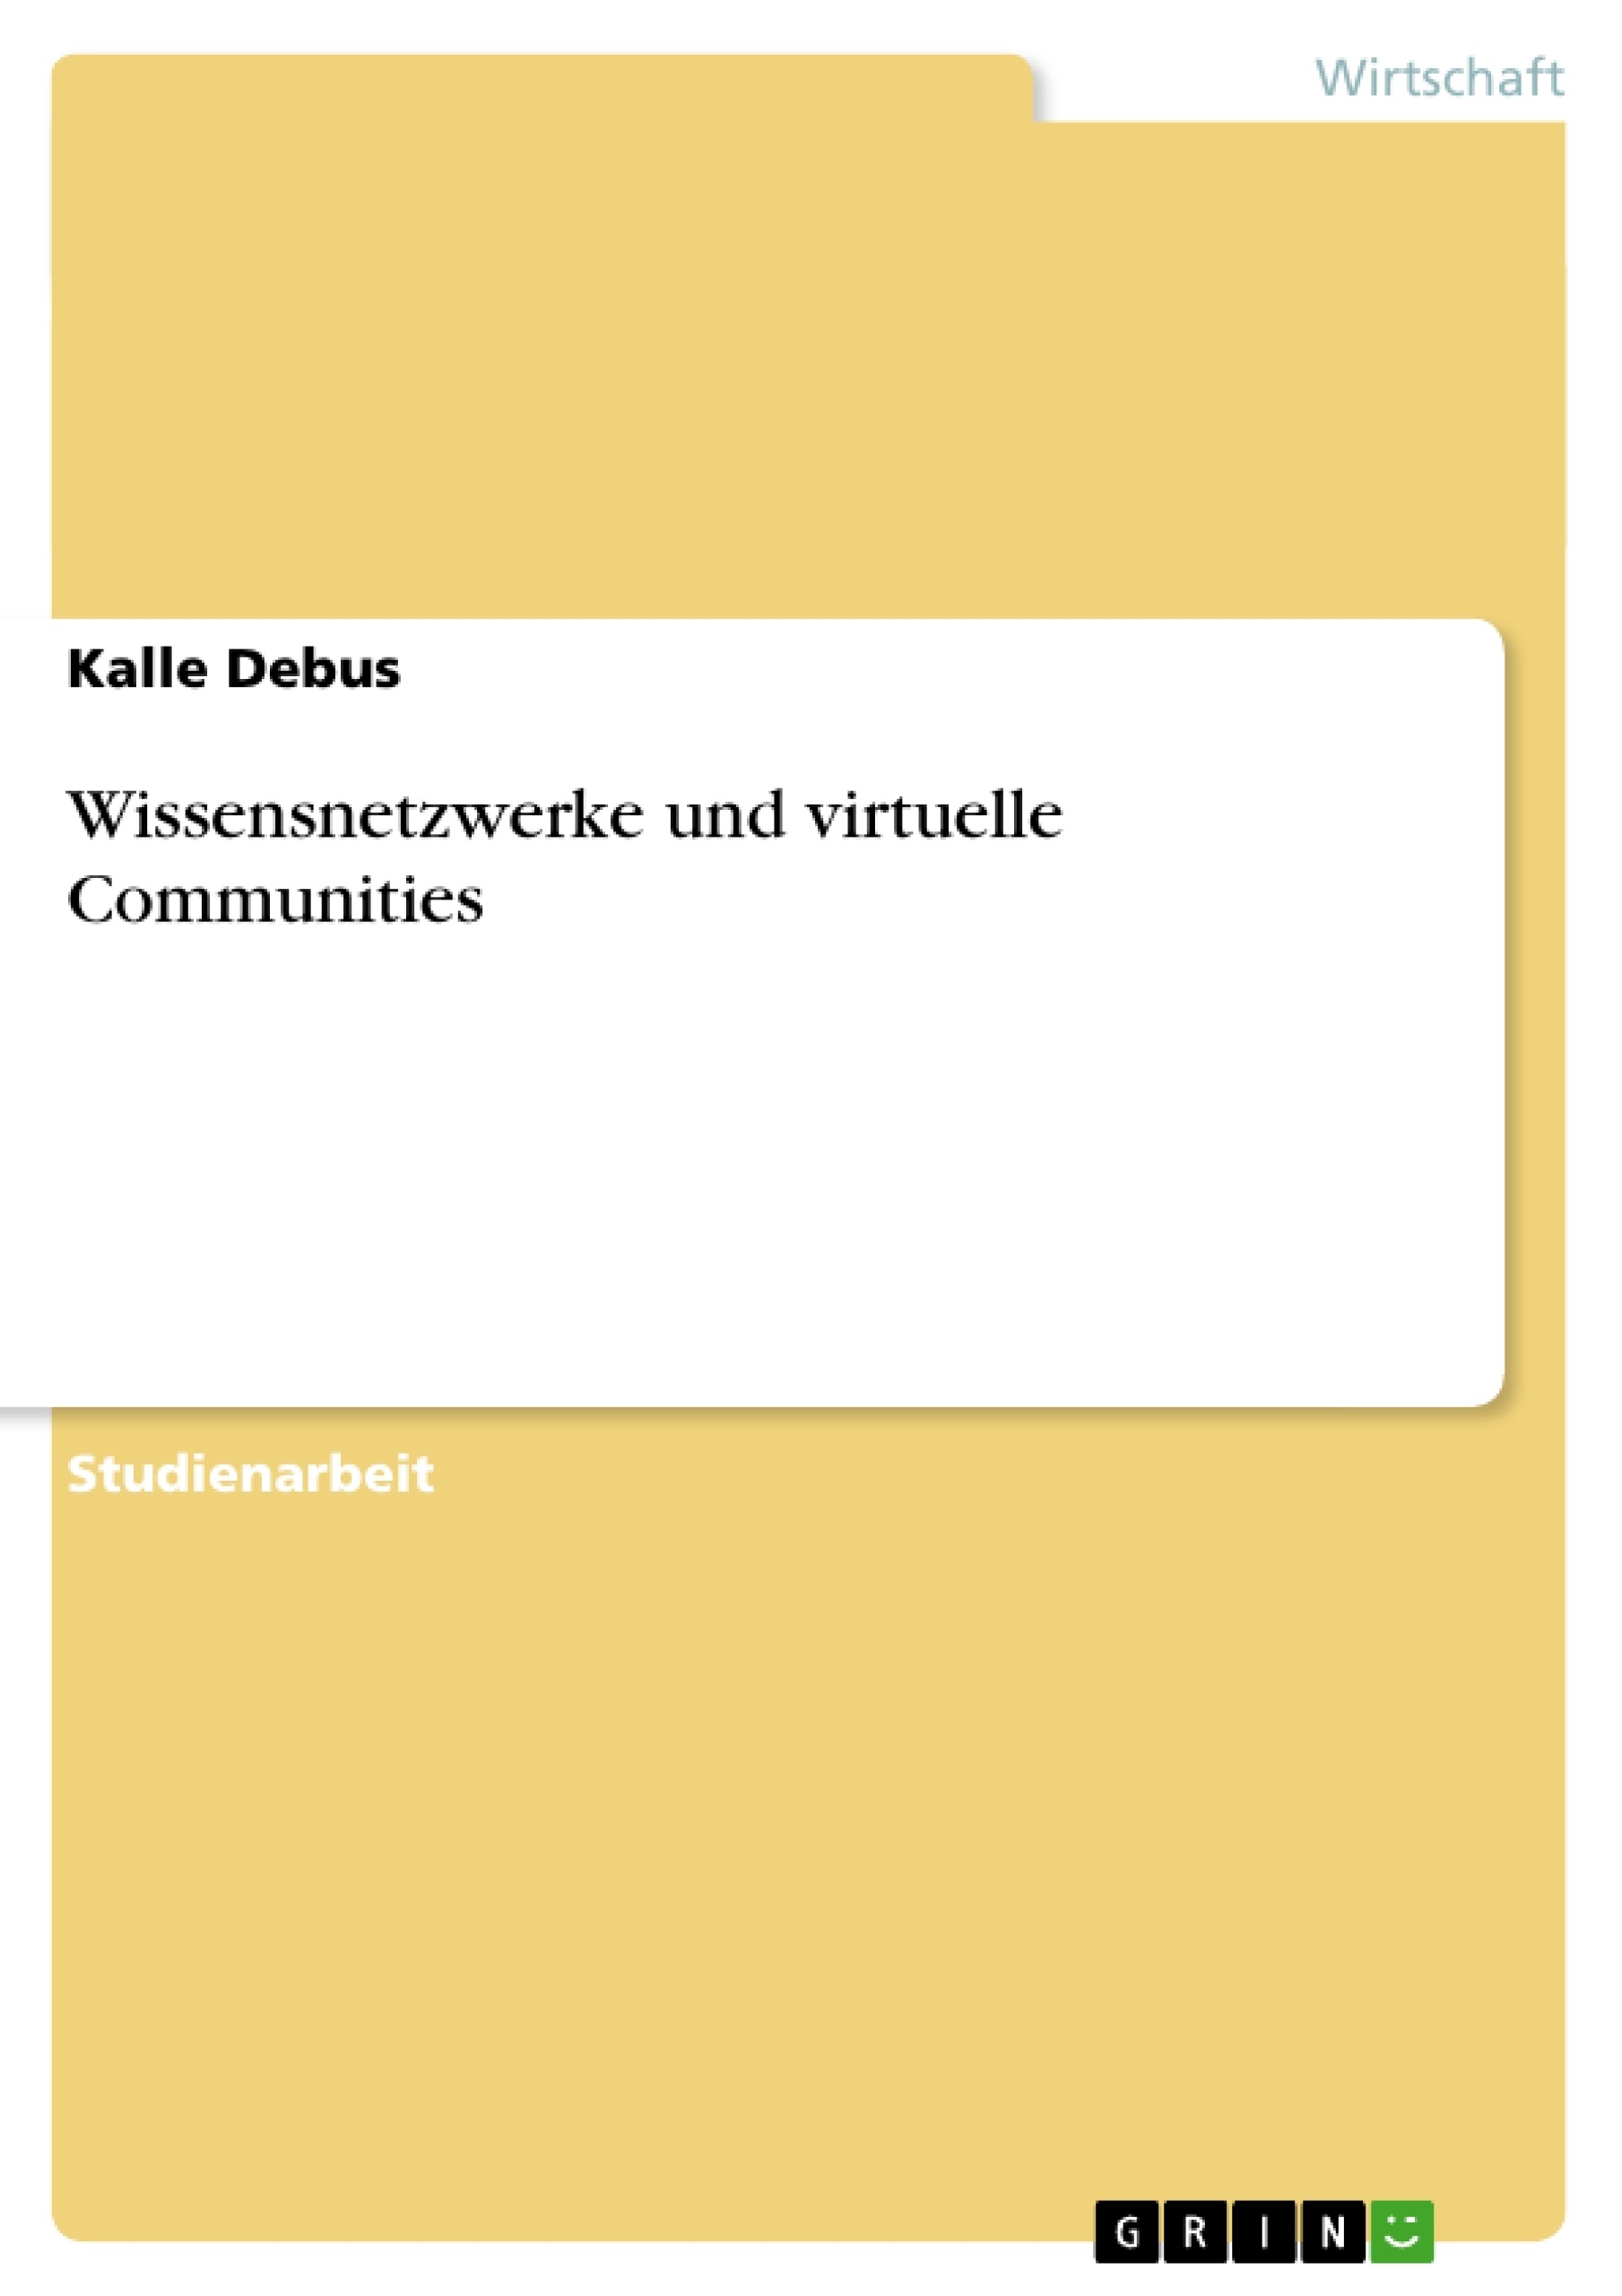 Título: Wissensnetzwerke und virtuelle Communities